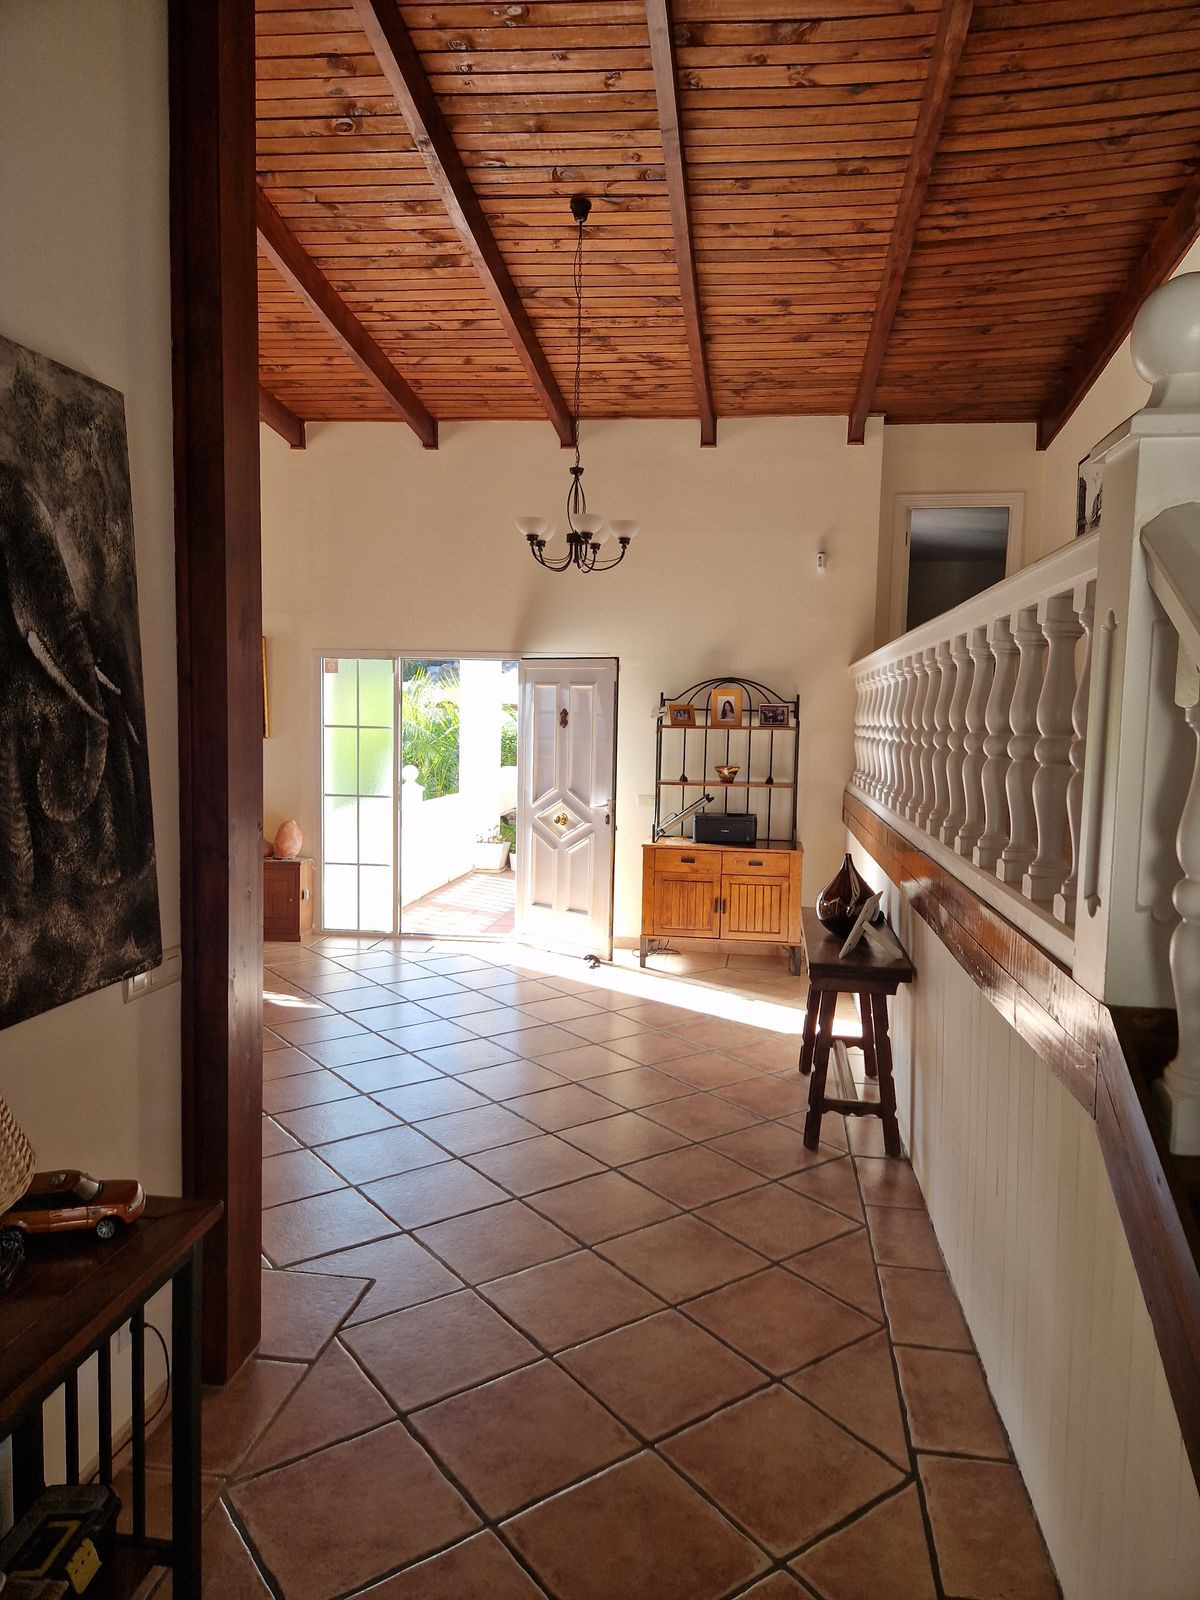 Villa Individuelle à Benalmadena, Costa del Sol
